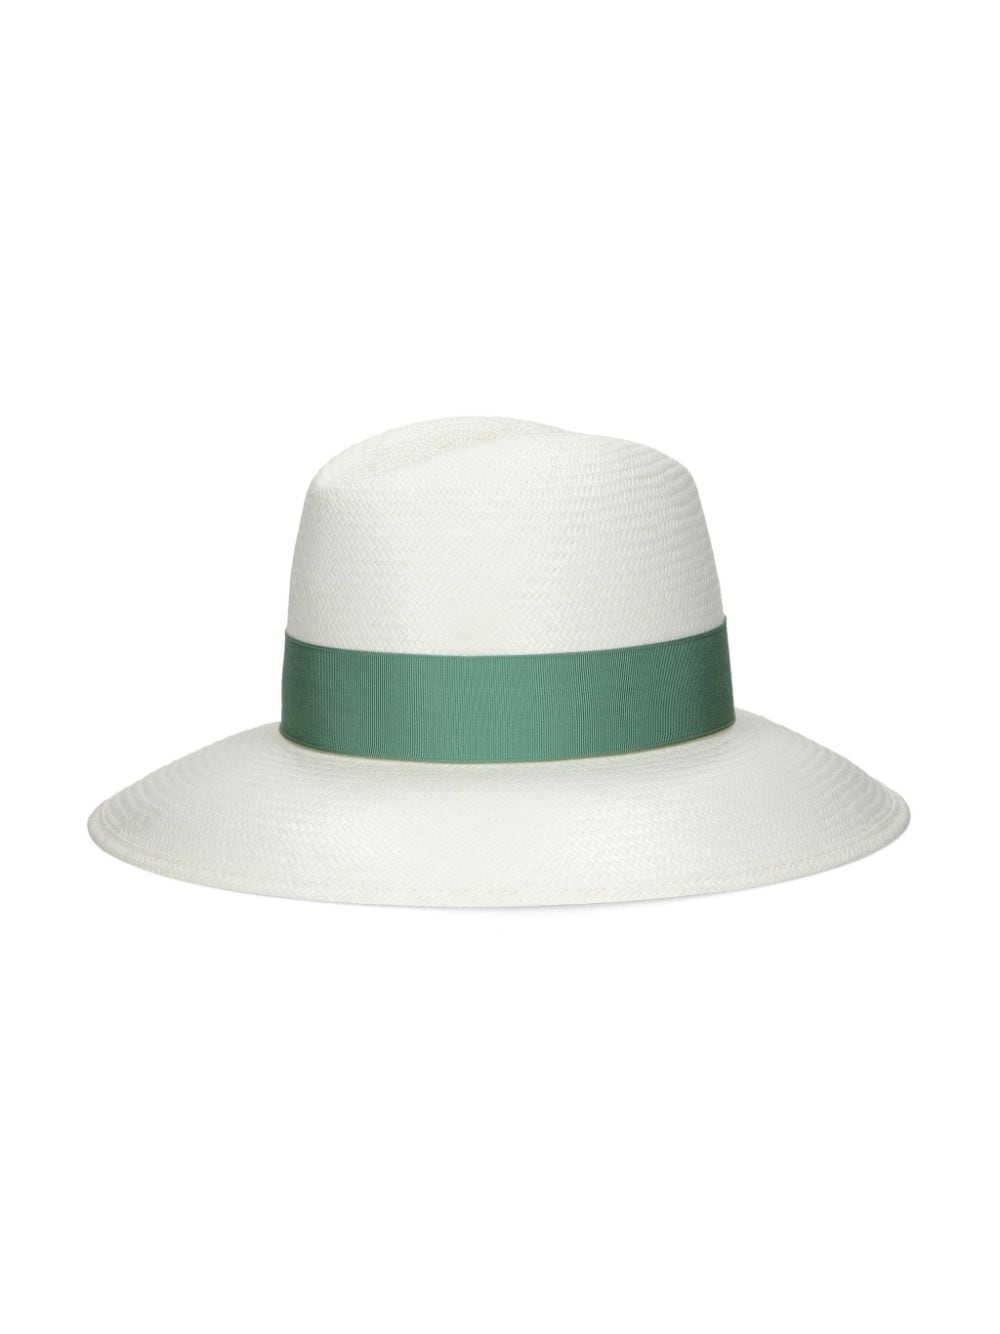 Borsalino Hats Green